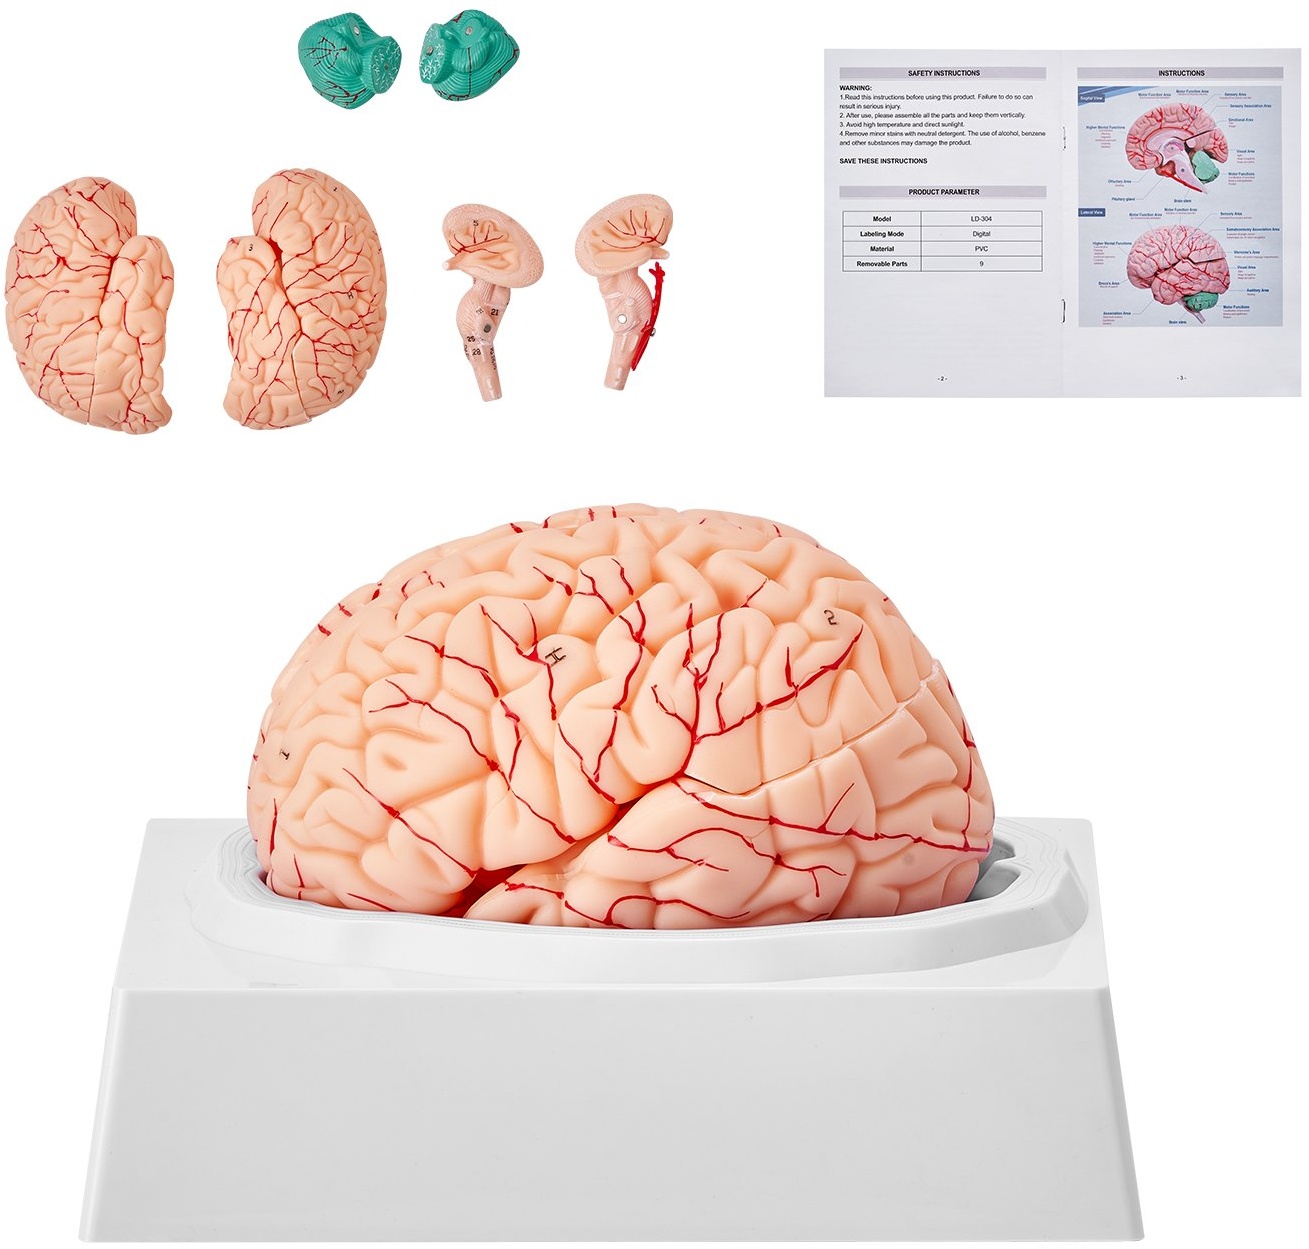 VEVOR Menschliches Gehirn Modell Anatomie, 1:1 Lebensgröße 9-teiliges Menschliches Gehirn Anatomisches Modell mit Etiketten & Display Basis, Abnehmbare Gehirn Modell für Wissenschaft Forschung Lehren